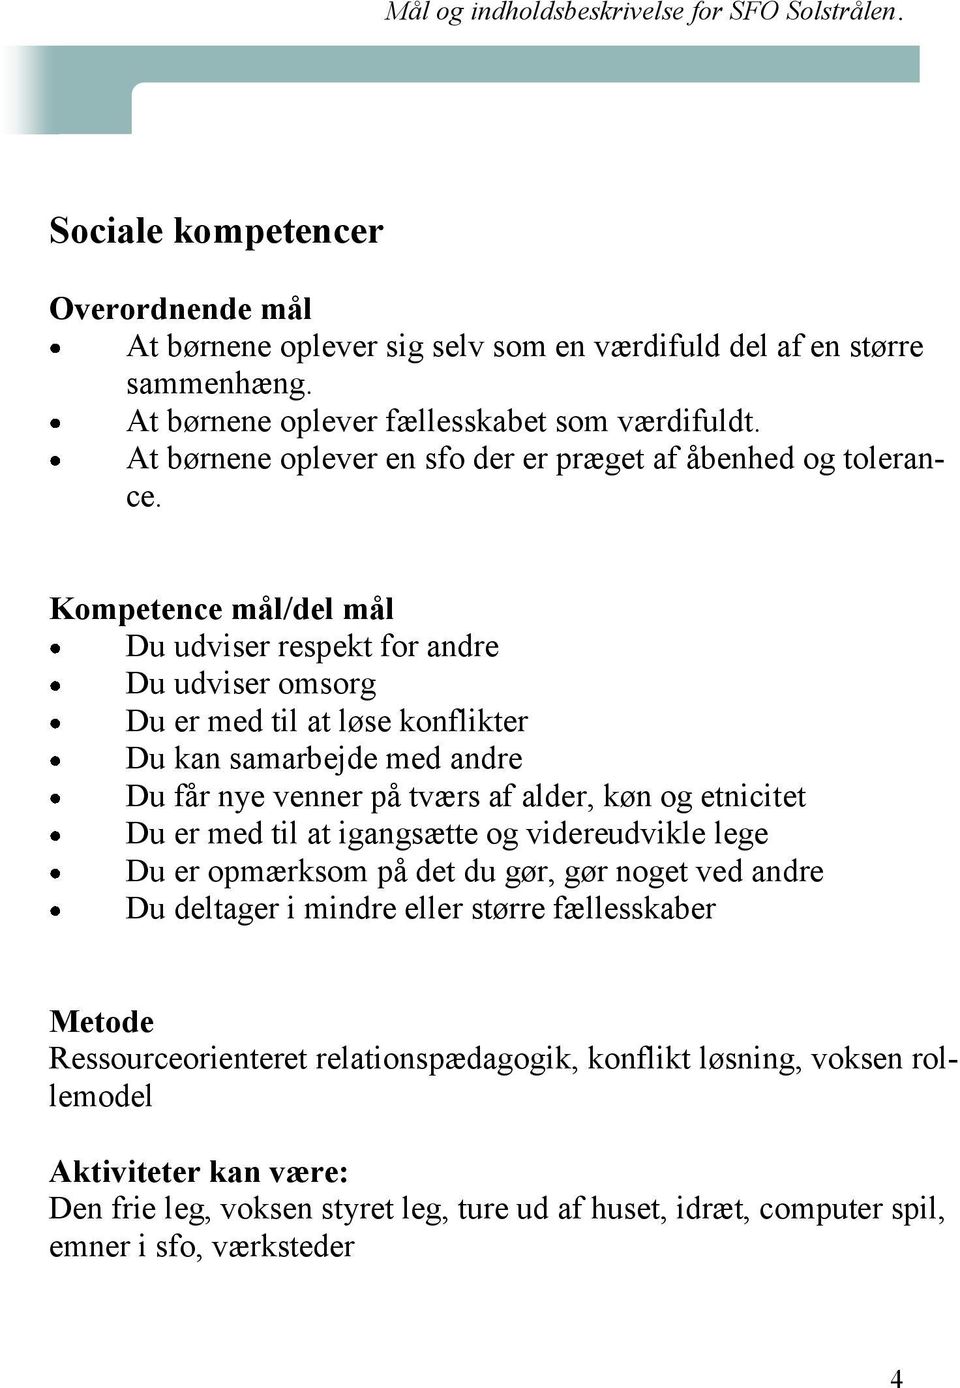 Mål og indholdsbeskrivelse for SFO Solstrålen. - PDF Gratis download